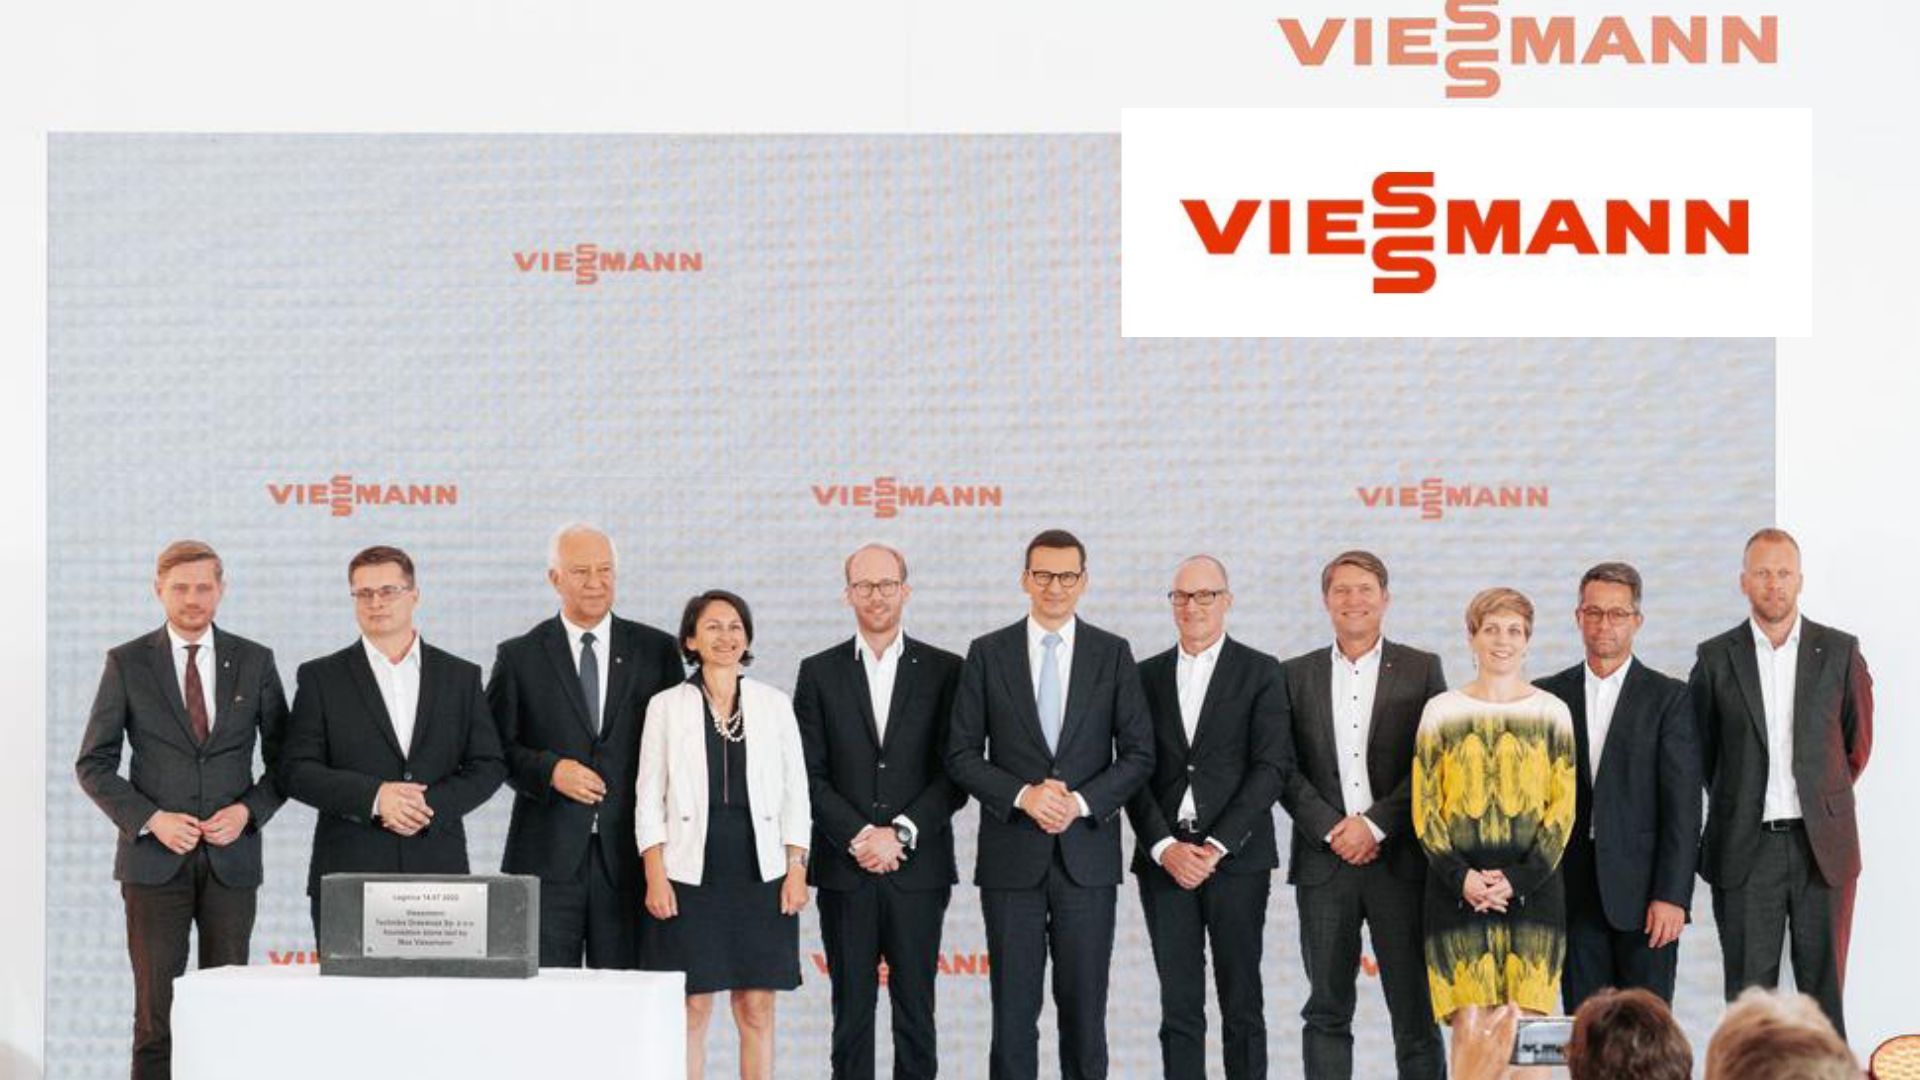 Viessmann jette les bases d’une accélération de la production de pompes à chaleur en Europe et investit 200 millions d’euros dans un nouveau site technologique à Legnica, en Pologne.